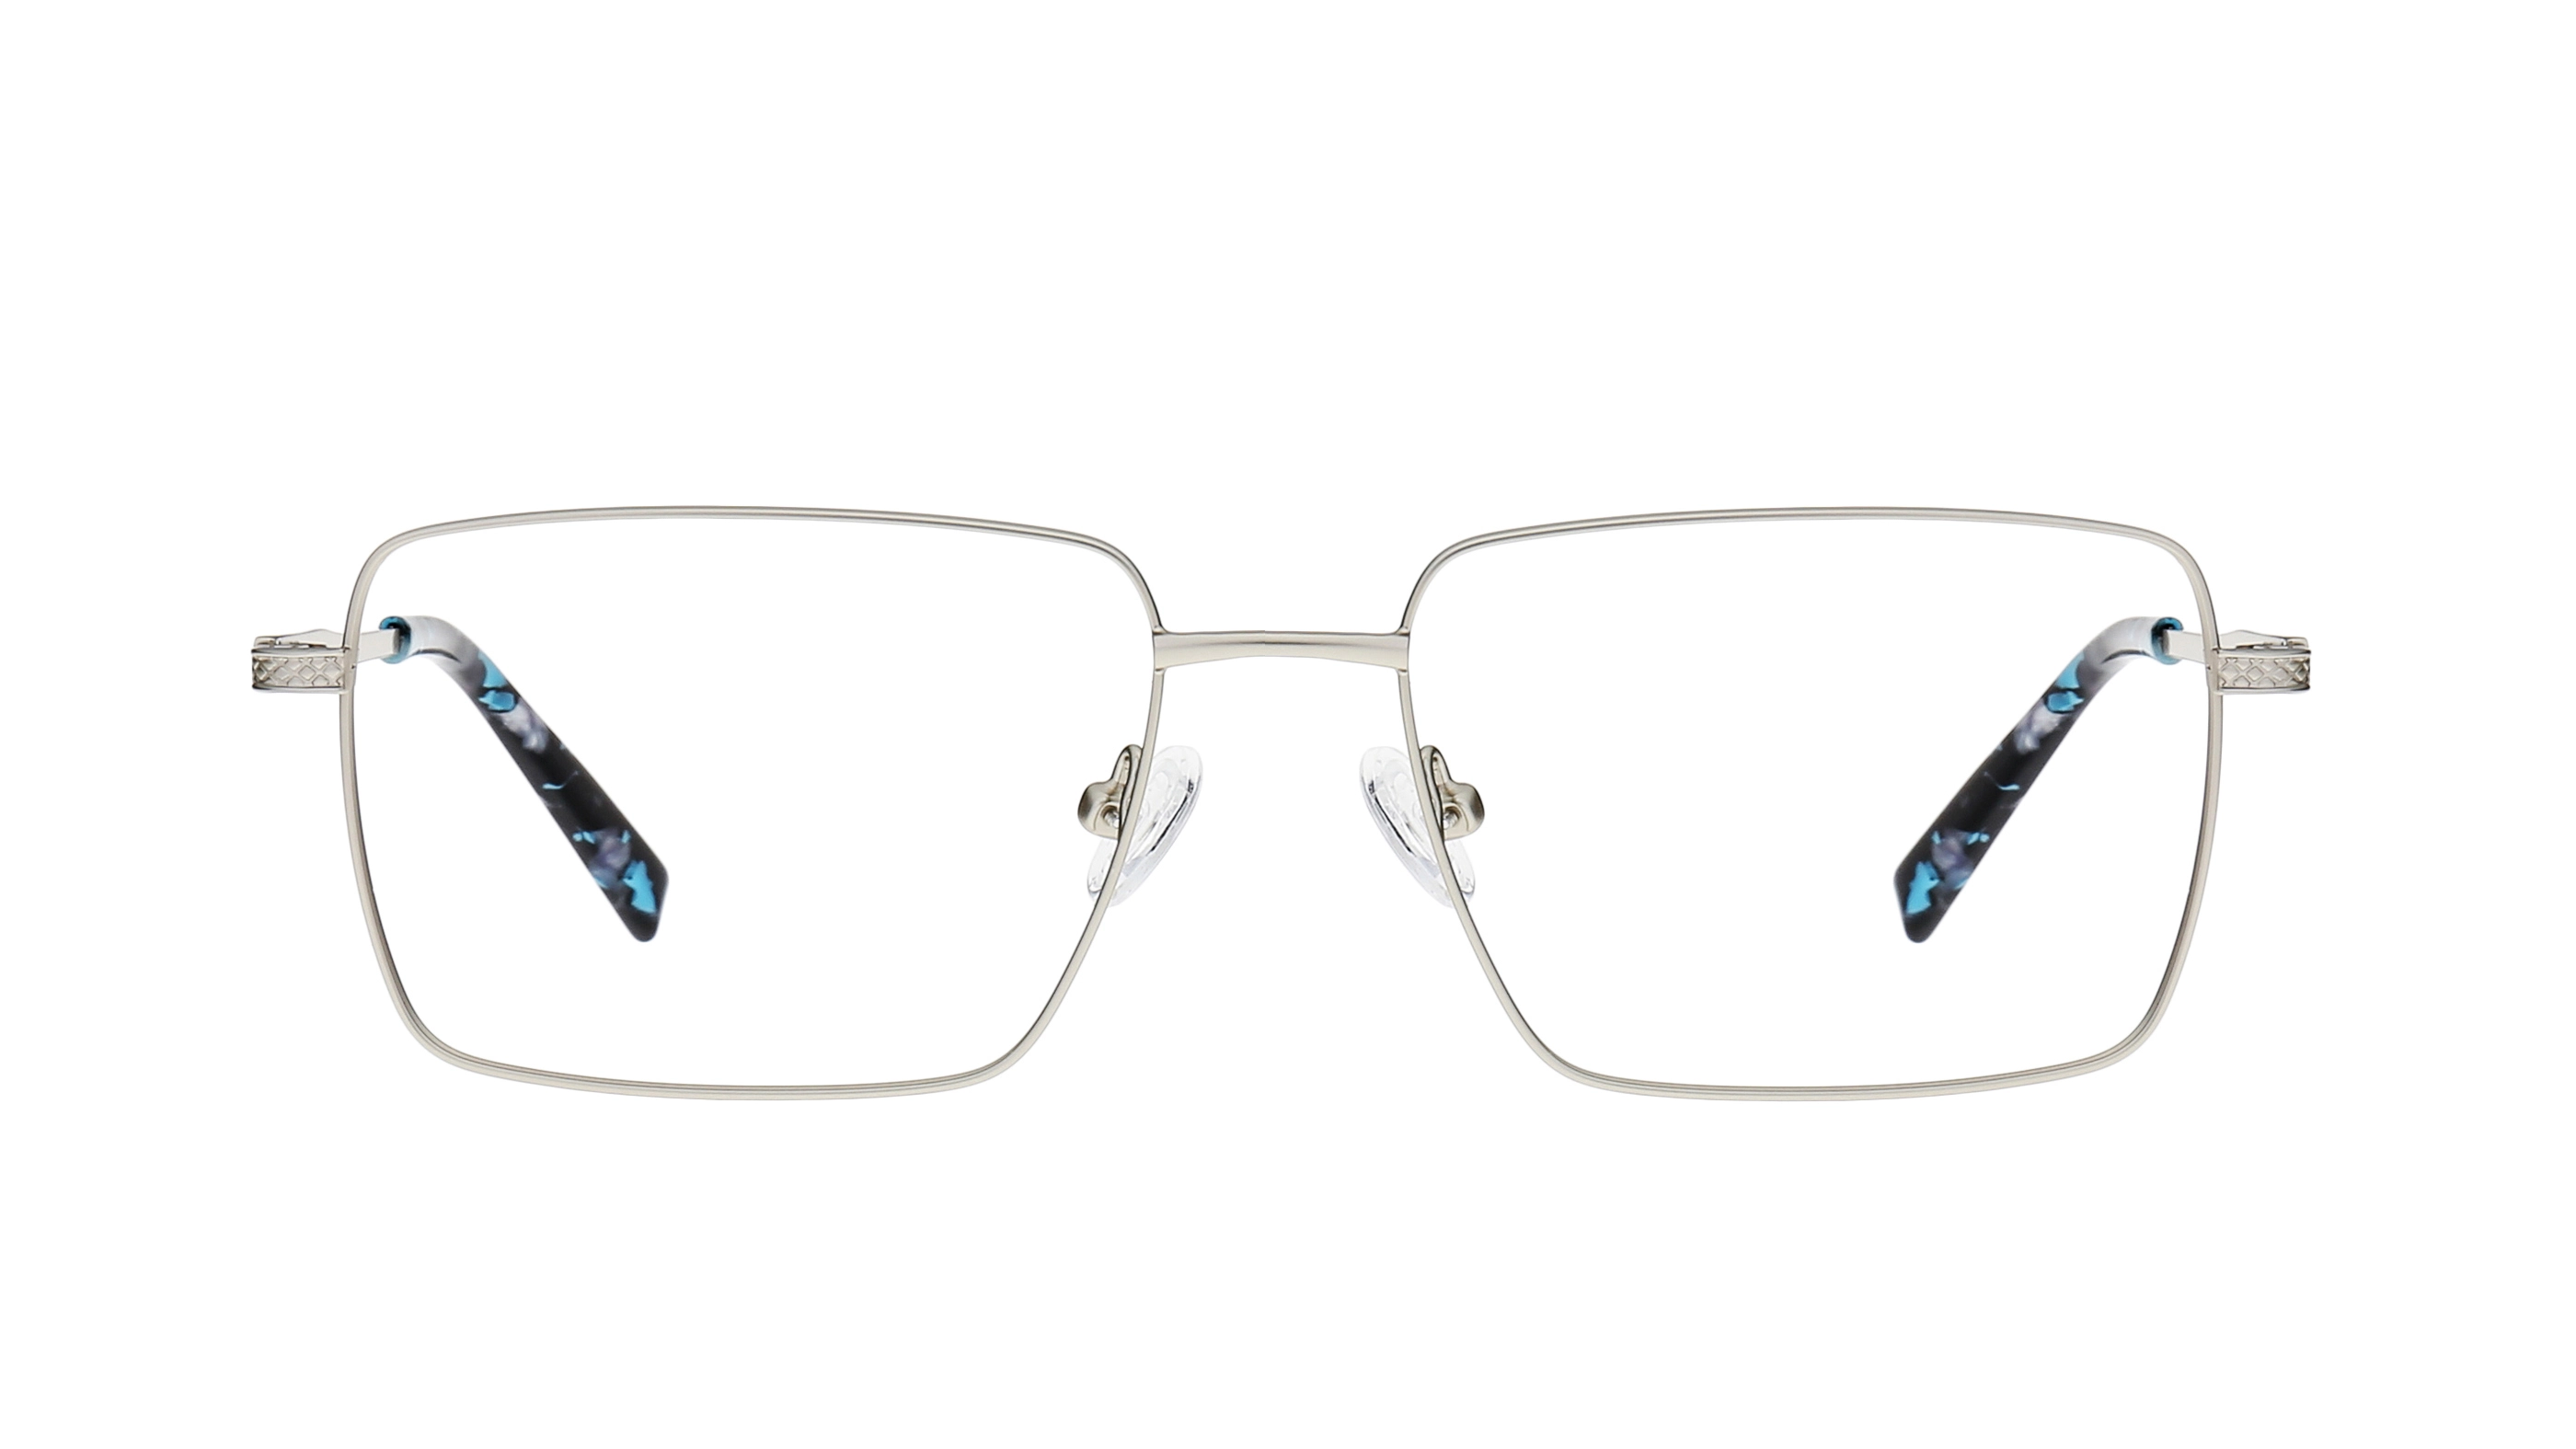 Wholesale Metal Glasses Frames LM1015